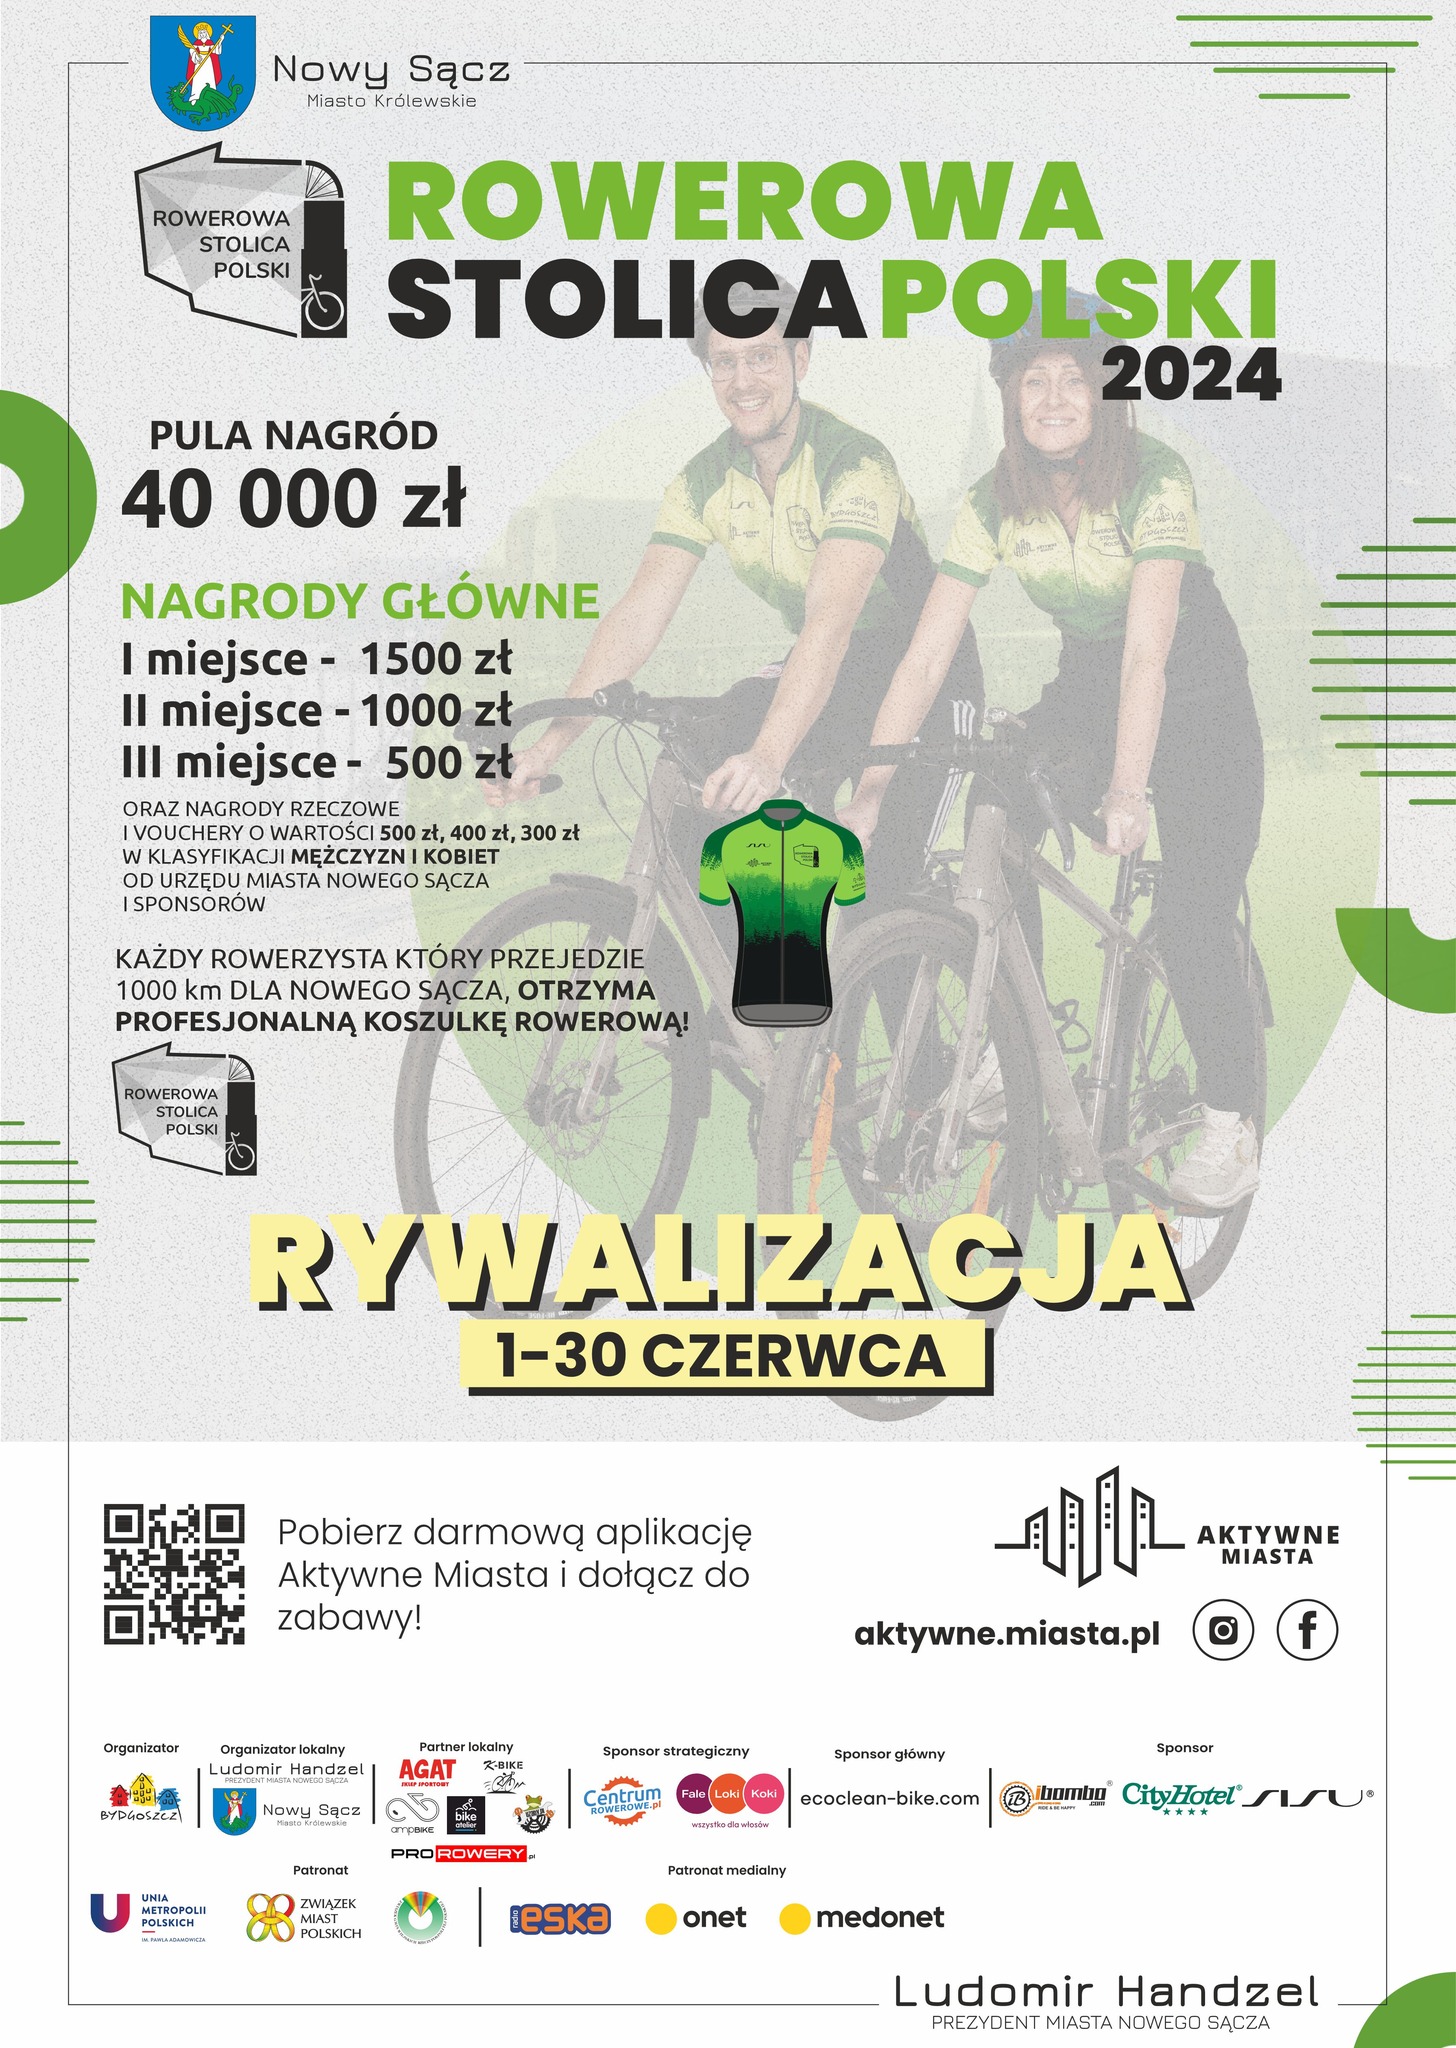 Rowerowa stolica Polski 2024